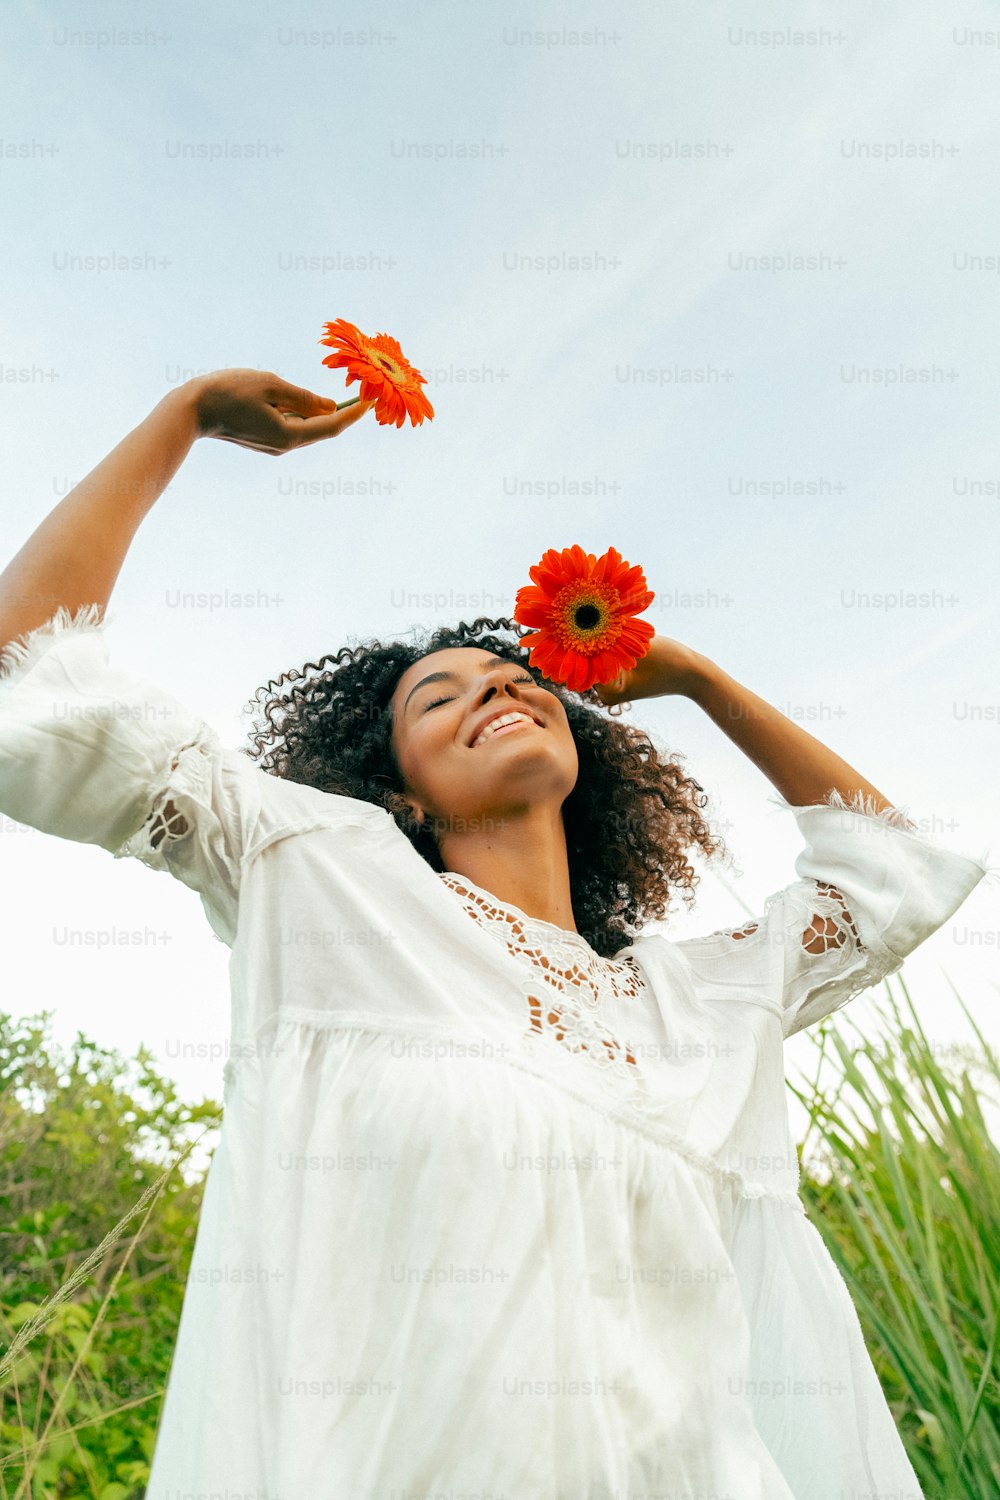 빨간 꽃을 들고 있는 흰 드레스를 입은 여자